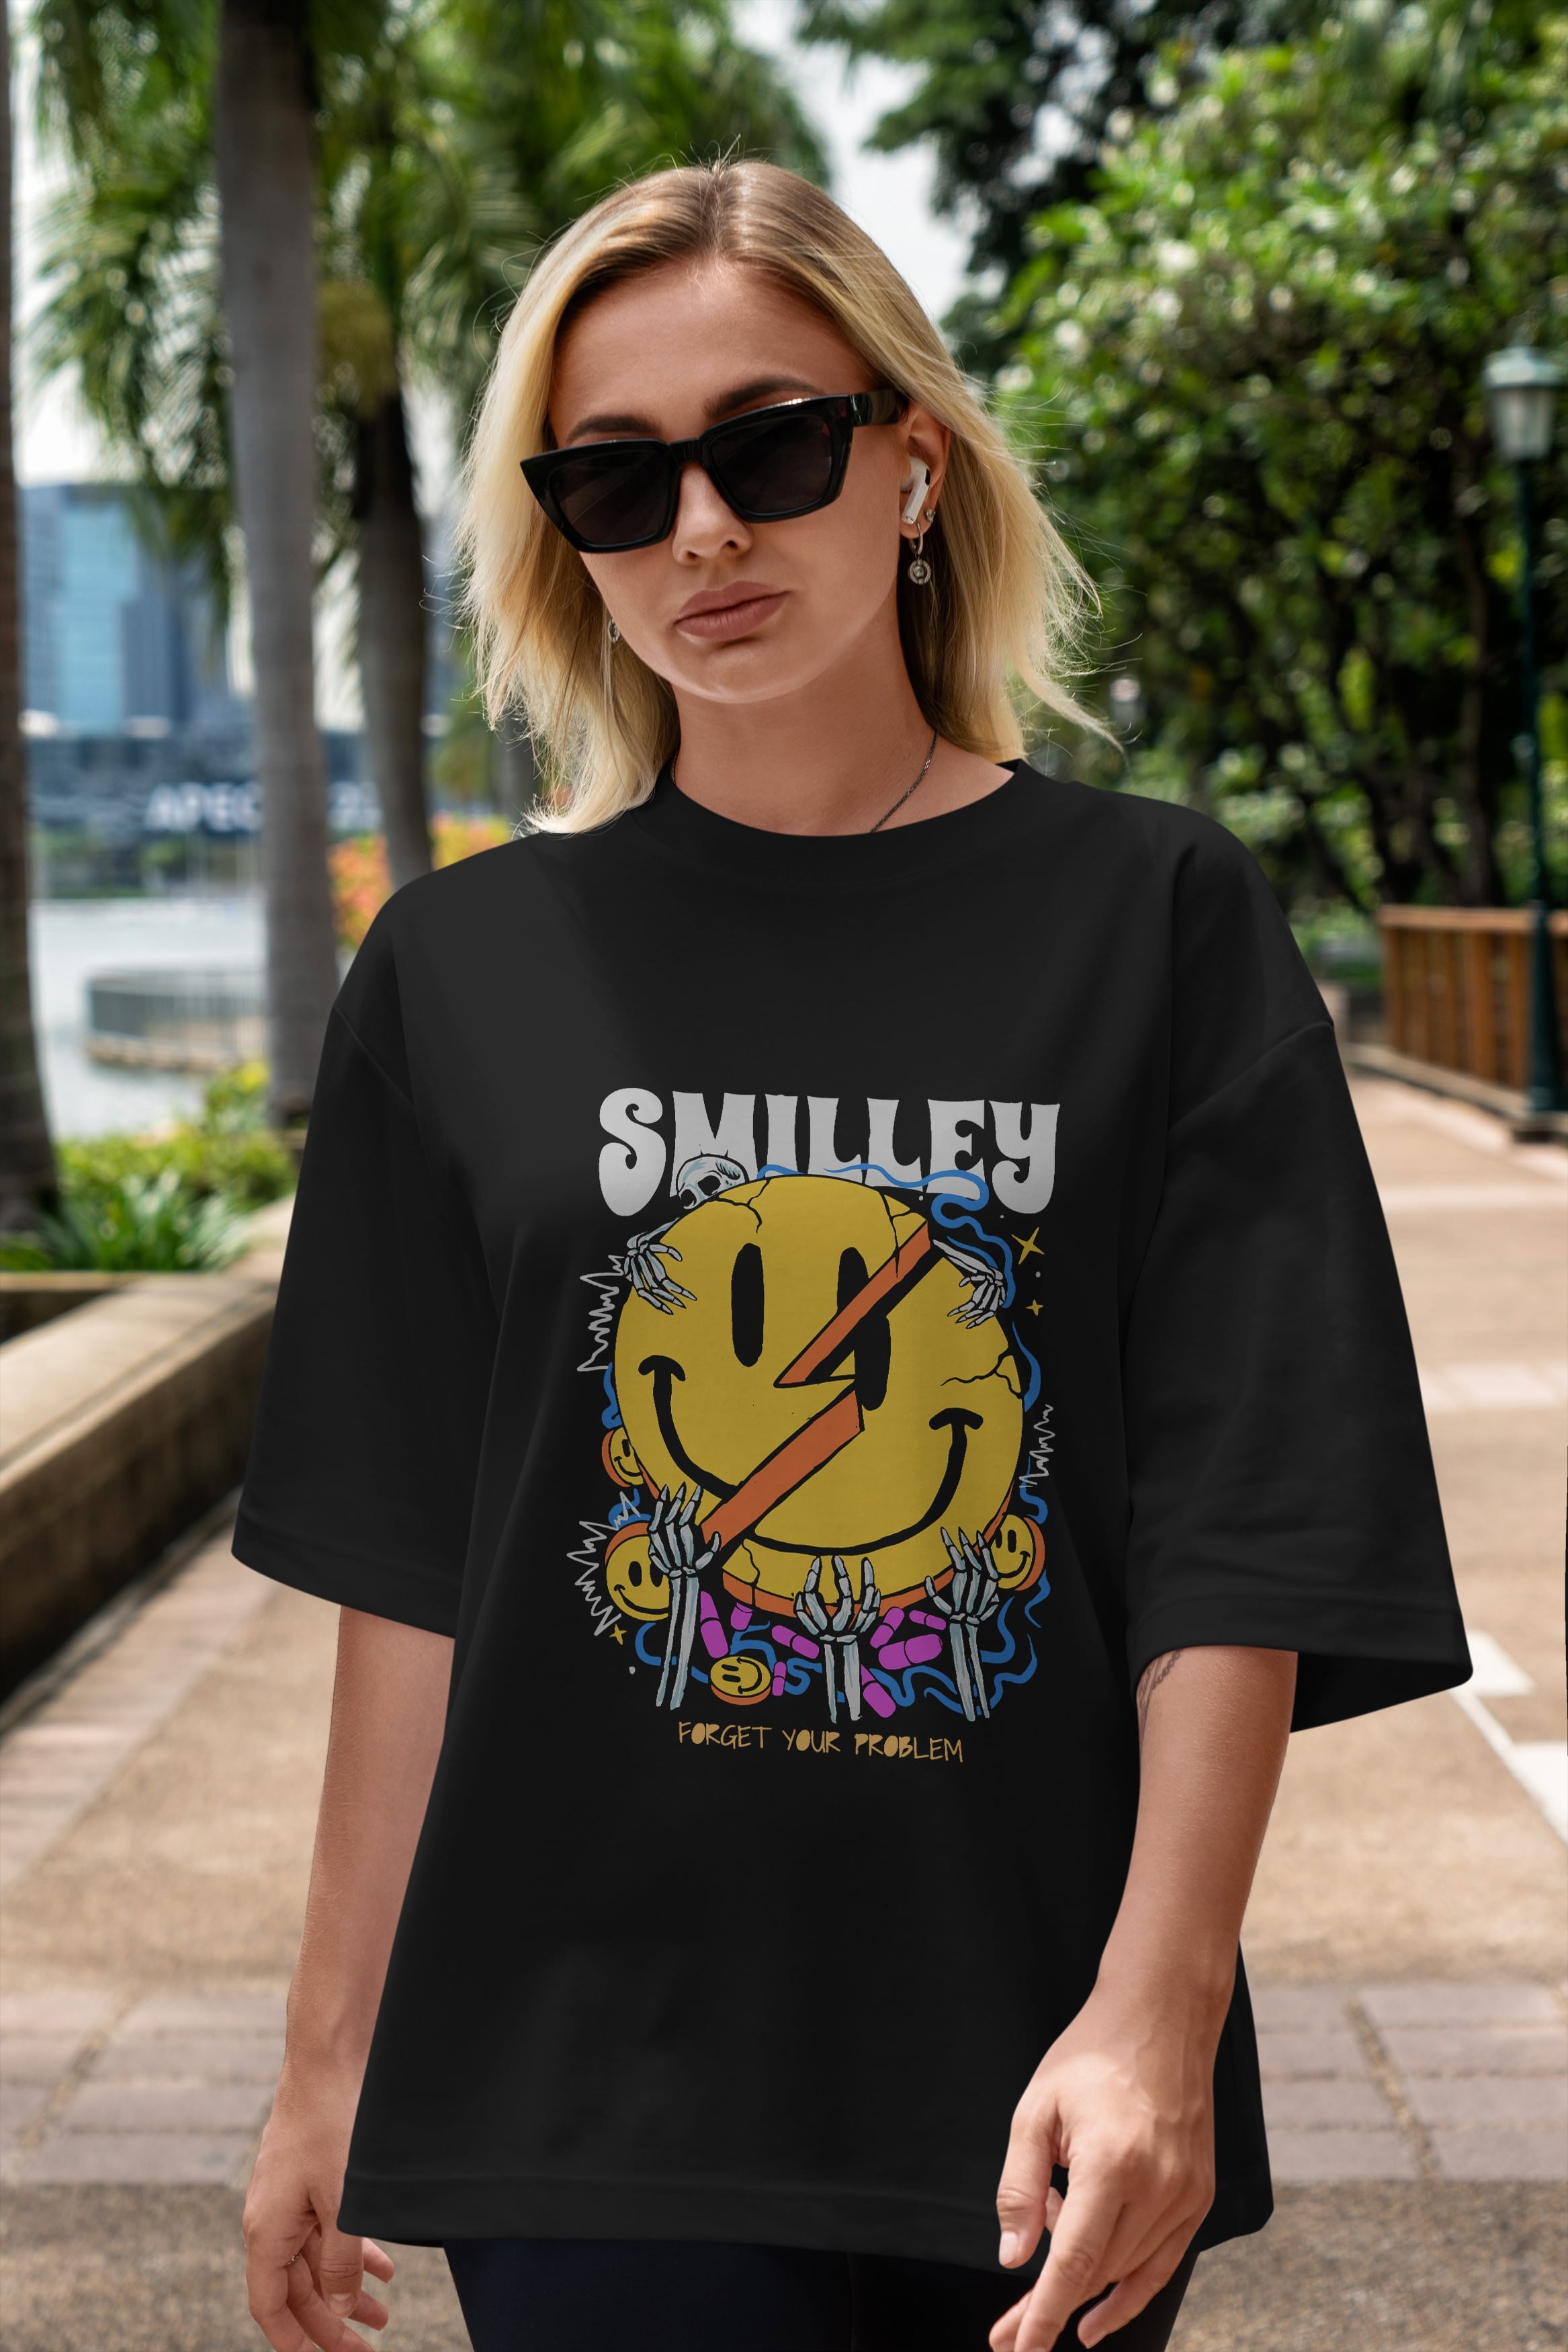 Smilley Streetwear Ön Baskılı Oversize t-shirt Erkek Kadın Unisex